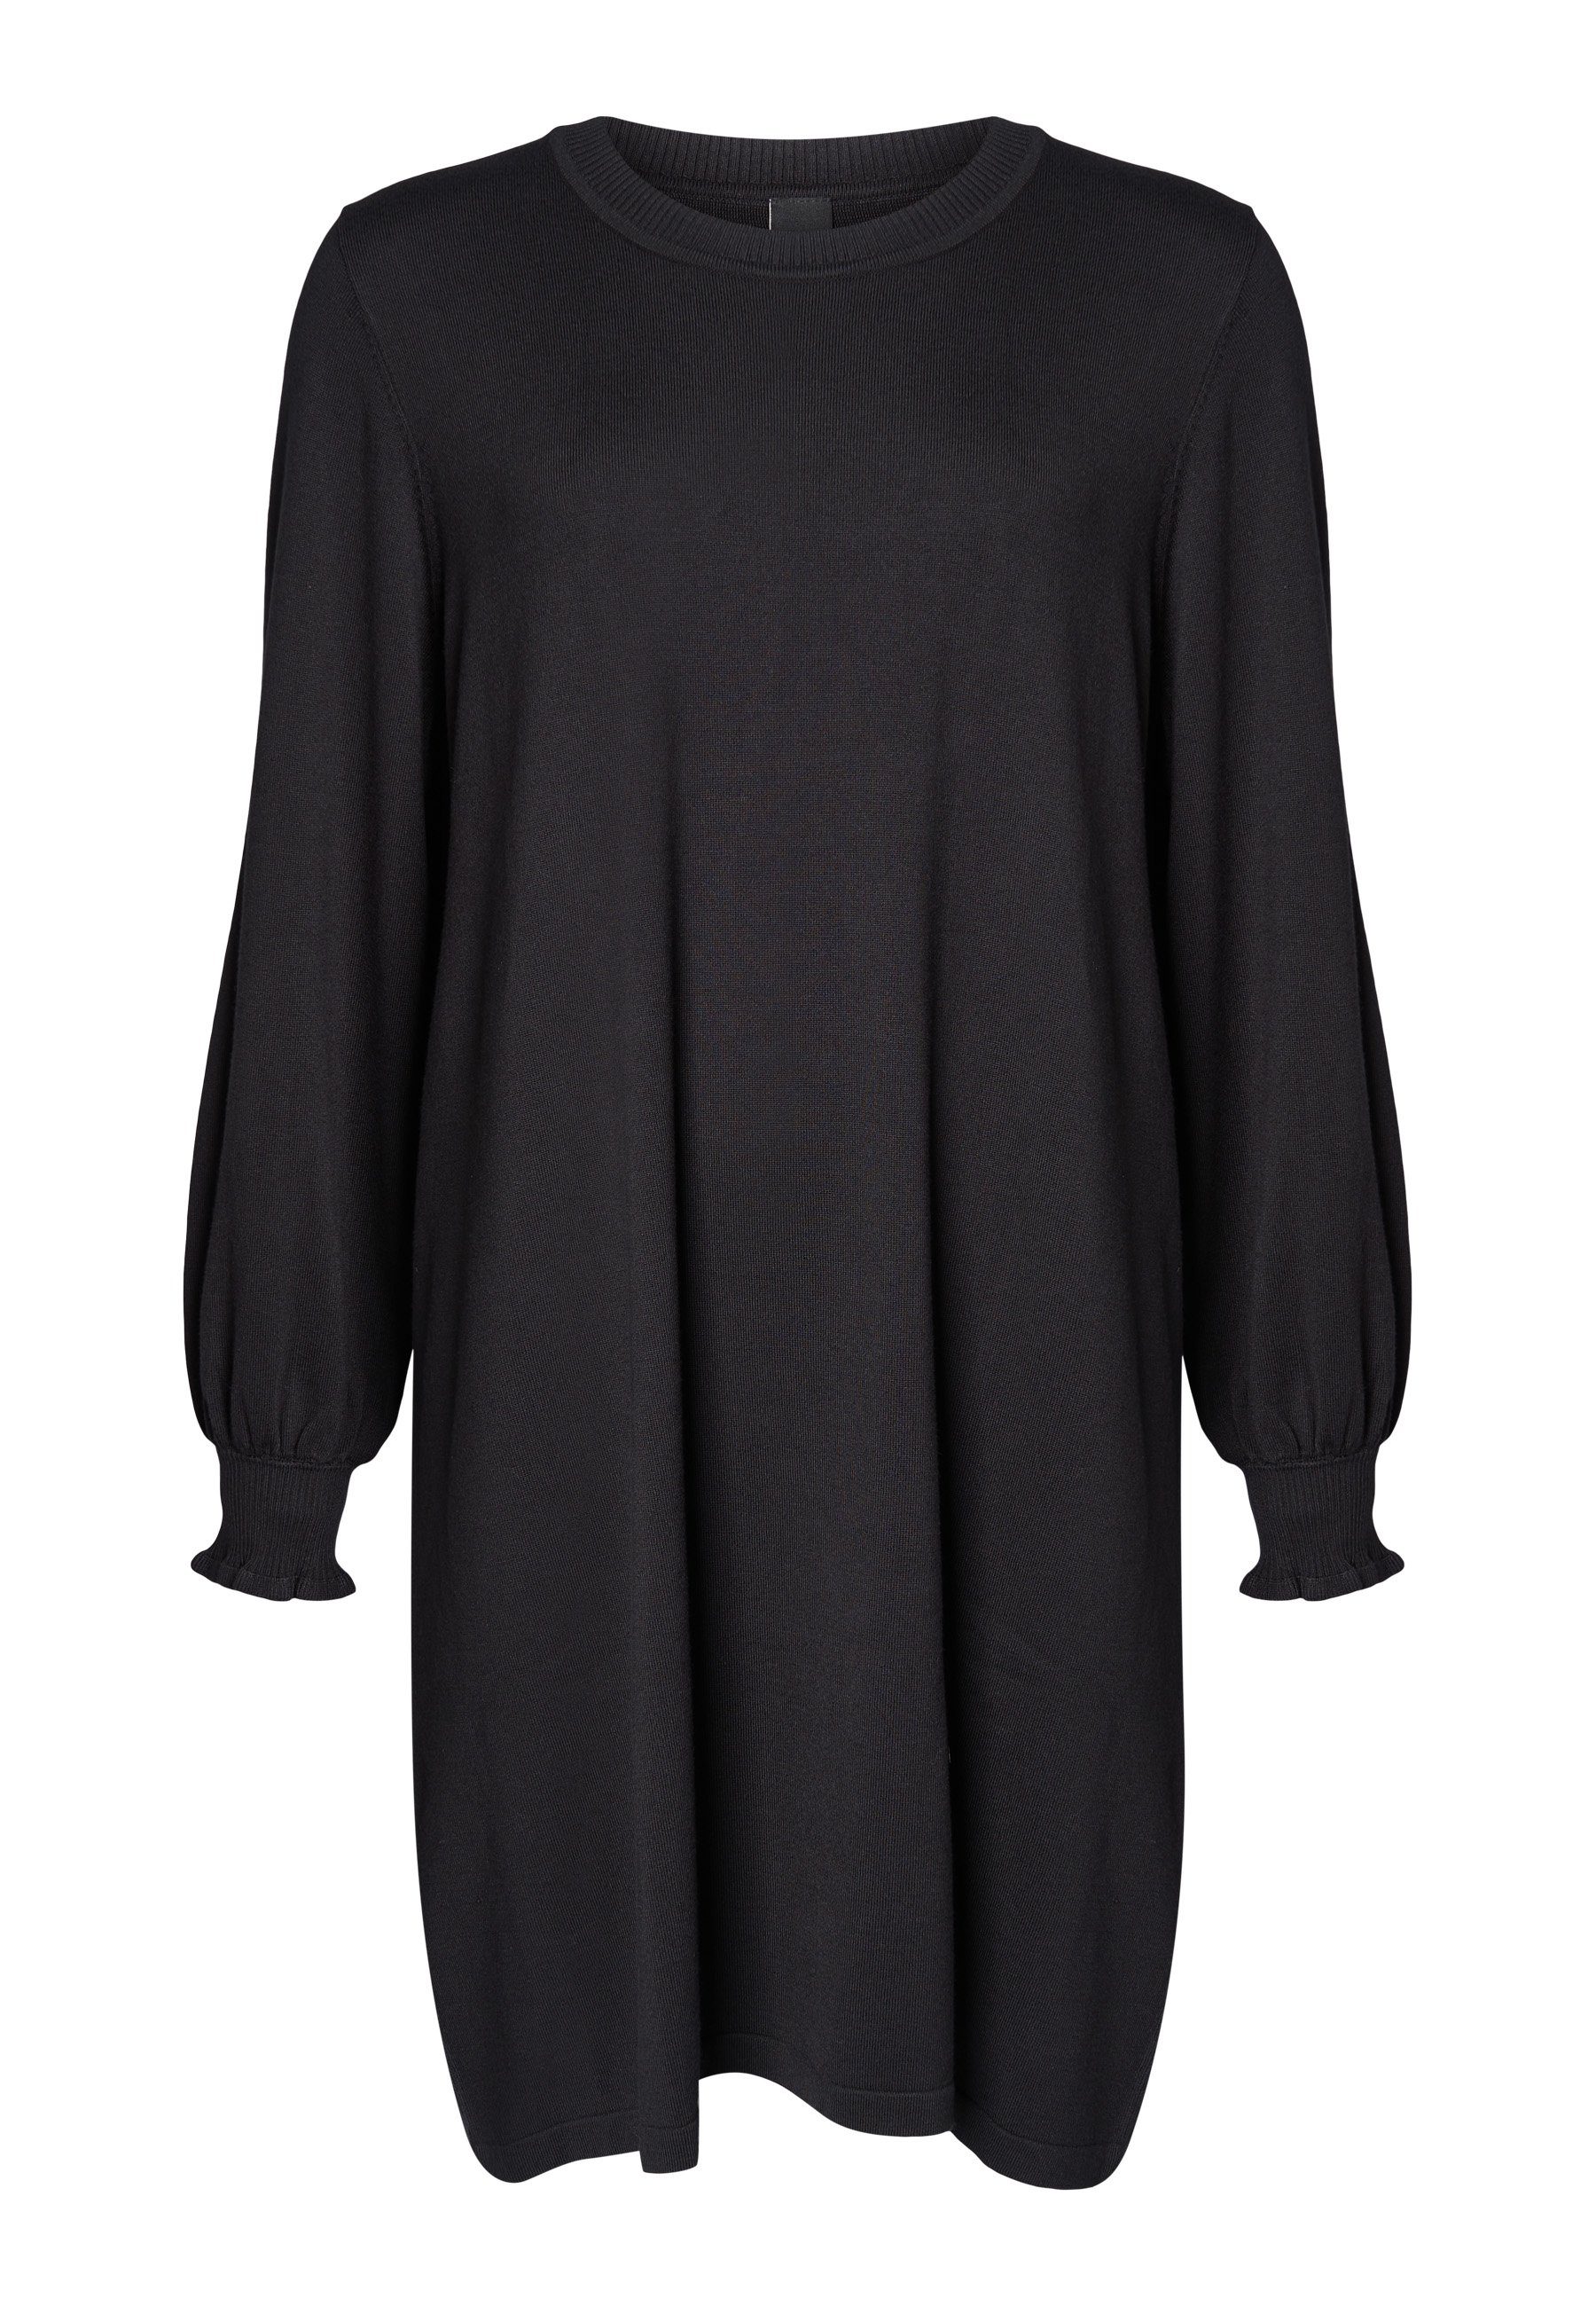 Auch neue Produkte sind im Preis reduziert! ADIA Sweatkleid AD Knit mit Black Rüschen am Dress Ärmelabschluss